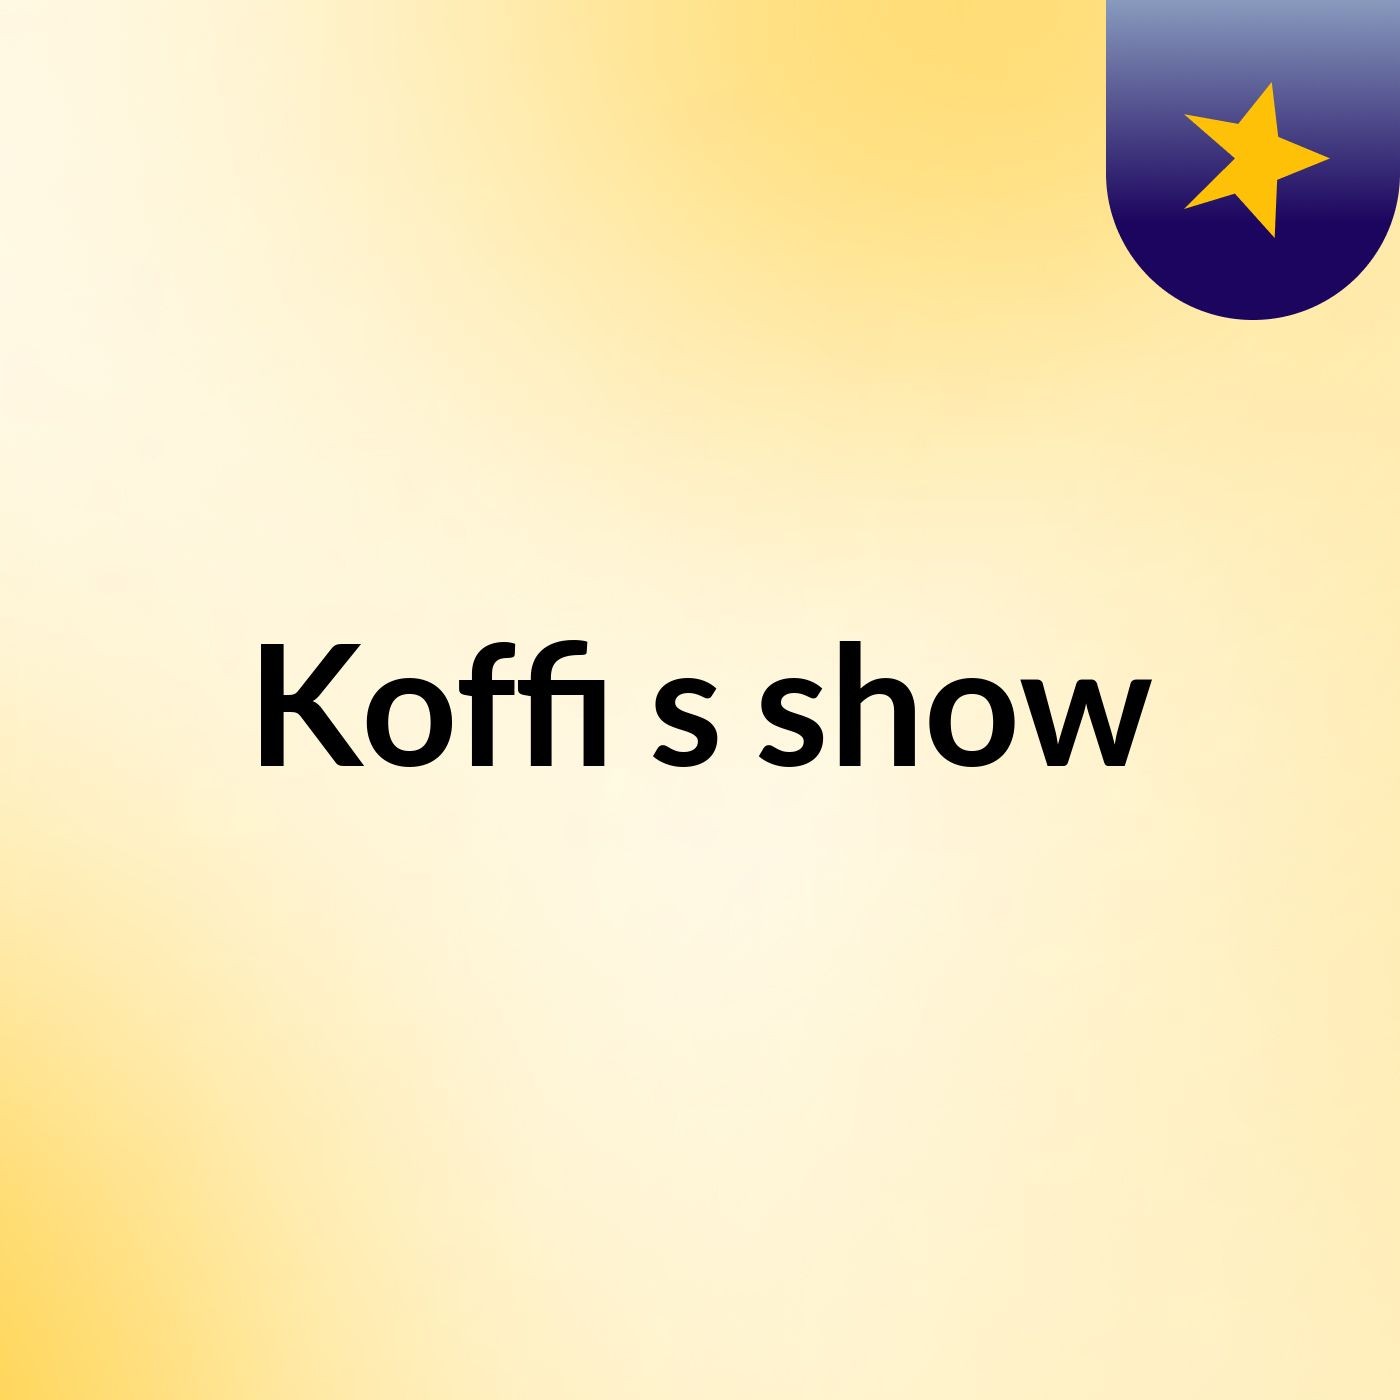 Koffi's show